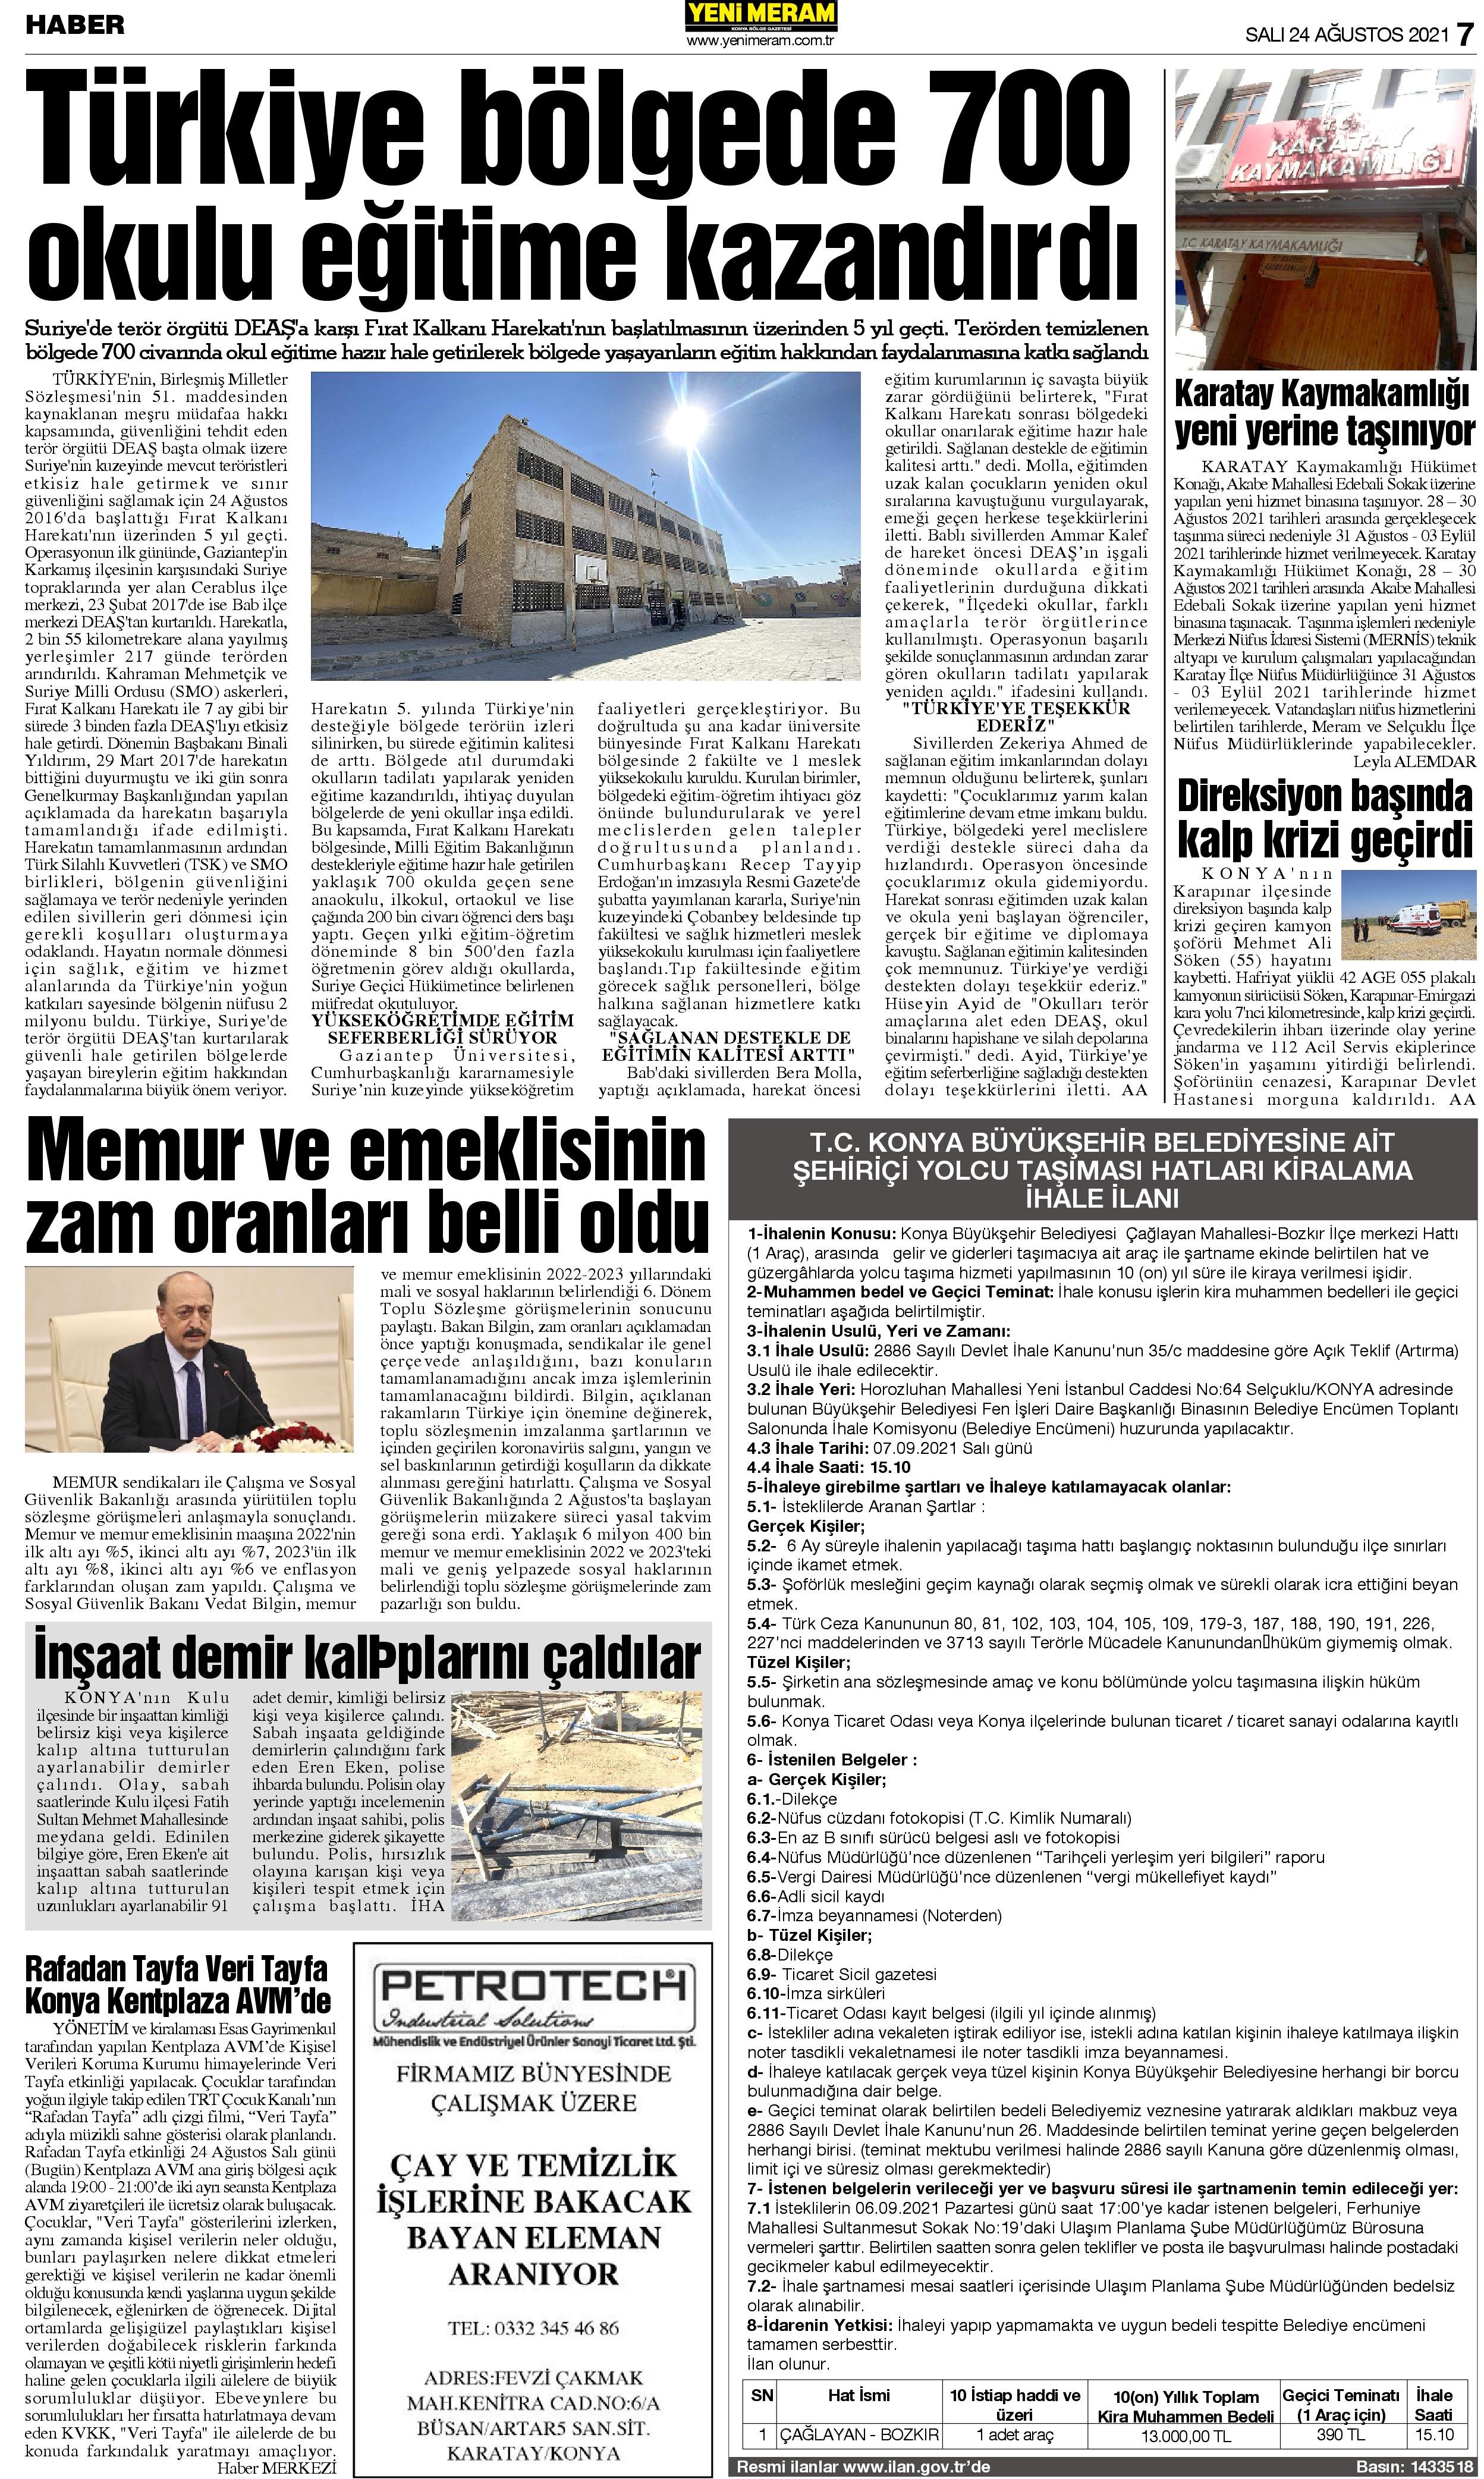 24 Ağustos 2021 Yeni Meram Gazetesi
